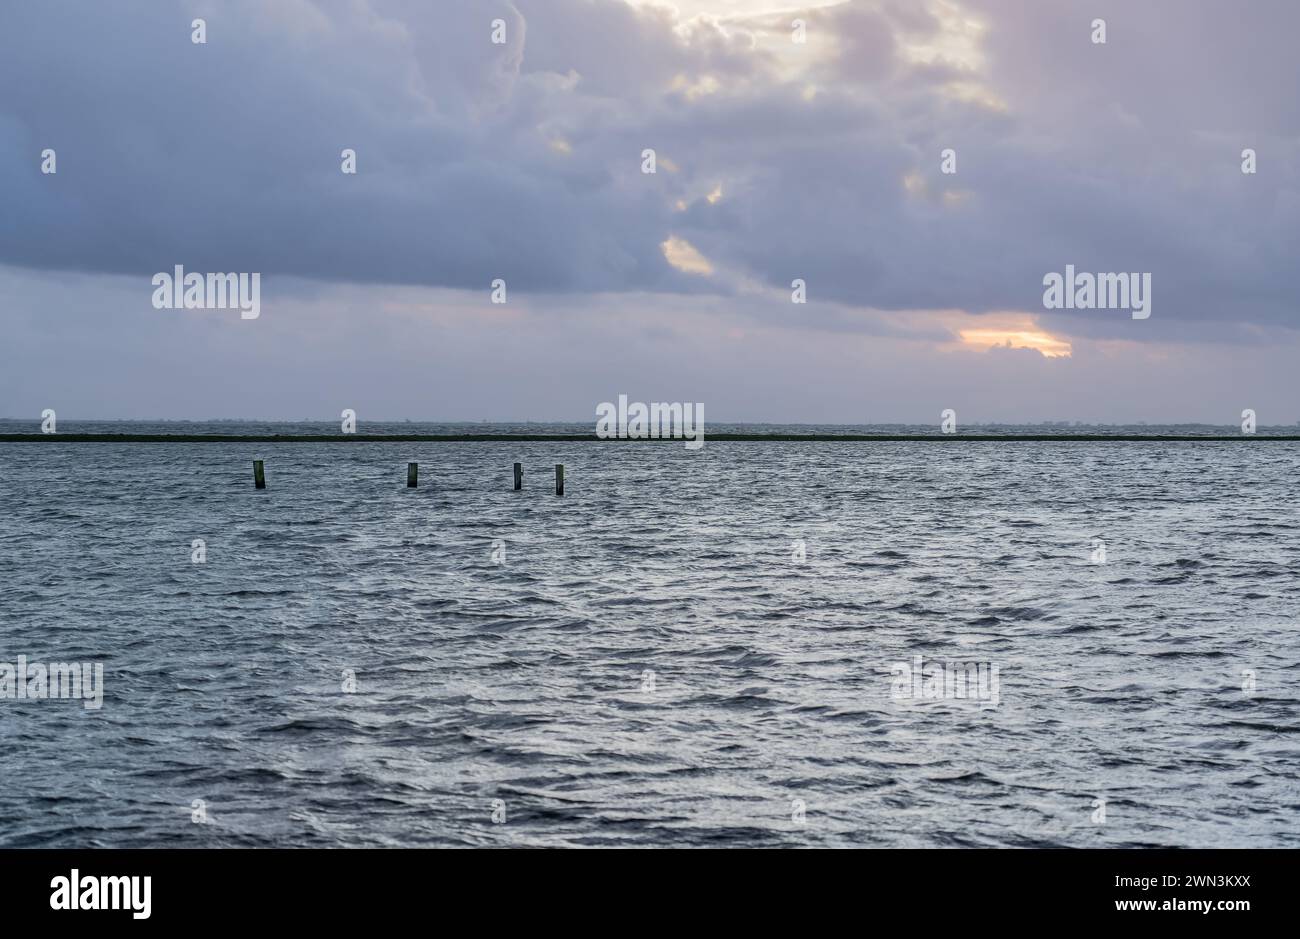 Das ruhige Wasser des überfluteten Überlaufgebietes reflektiert Pastelltöne des Abendhimmels, Deich grenzt an den See in ruhiger und malerischer niederländischer Landschaft Stockfoto